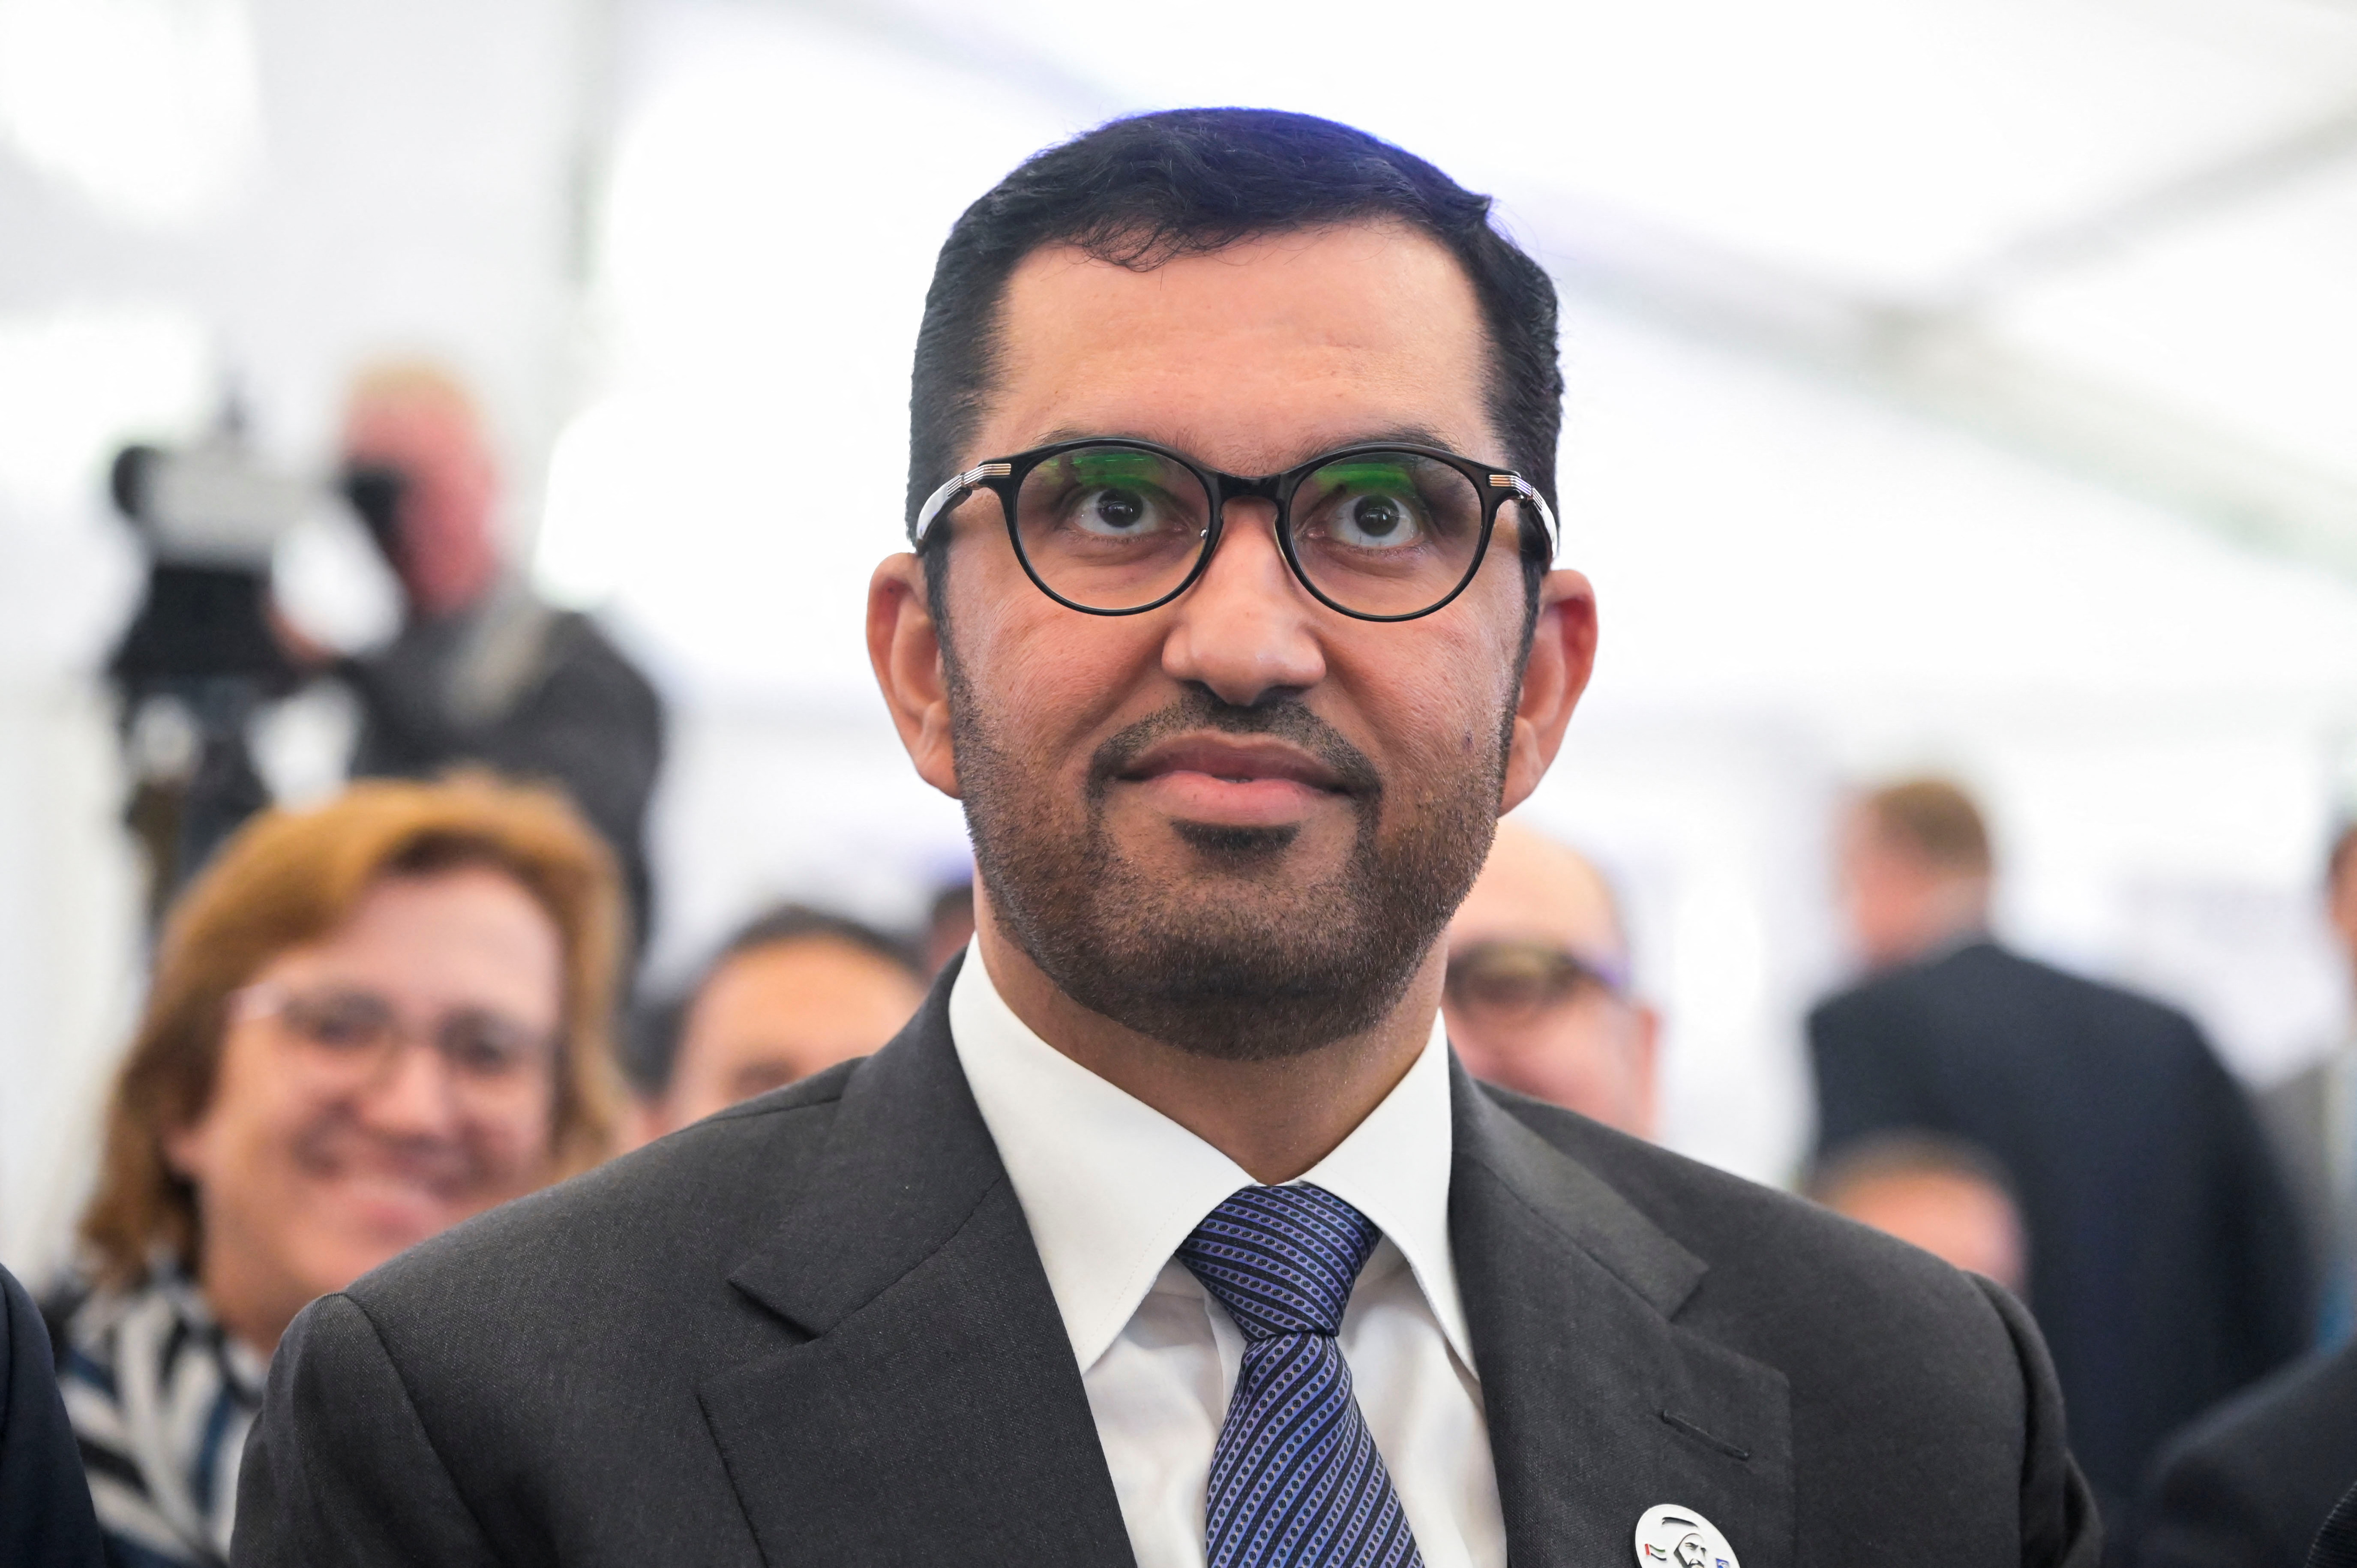 Emirats arabes unis : le ministre de l'Industrie, patron d'une société pétrolière, sera le président de la COP28